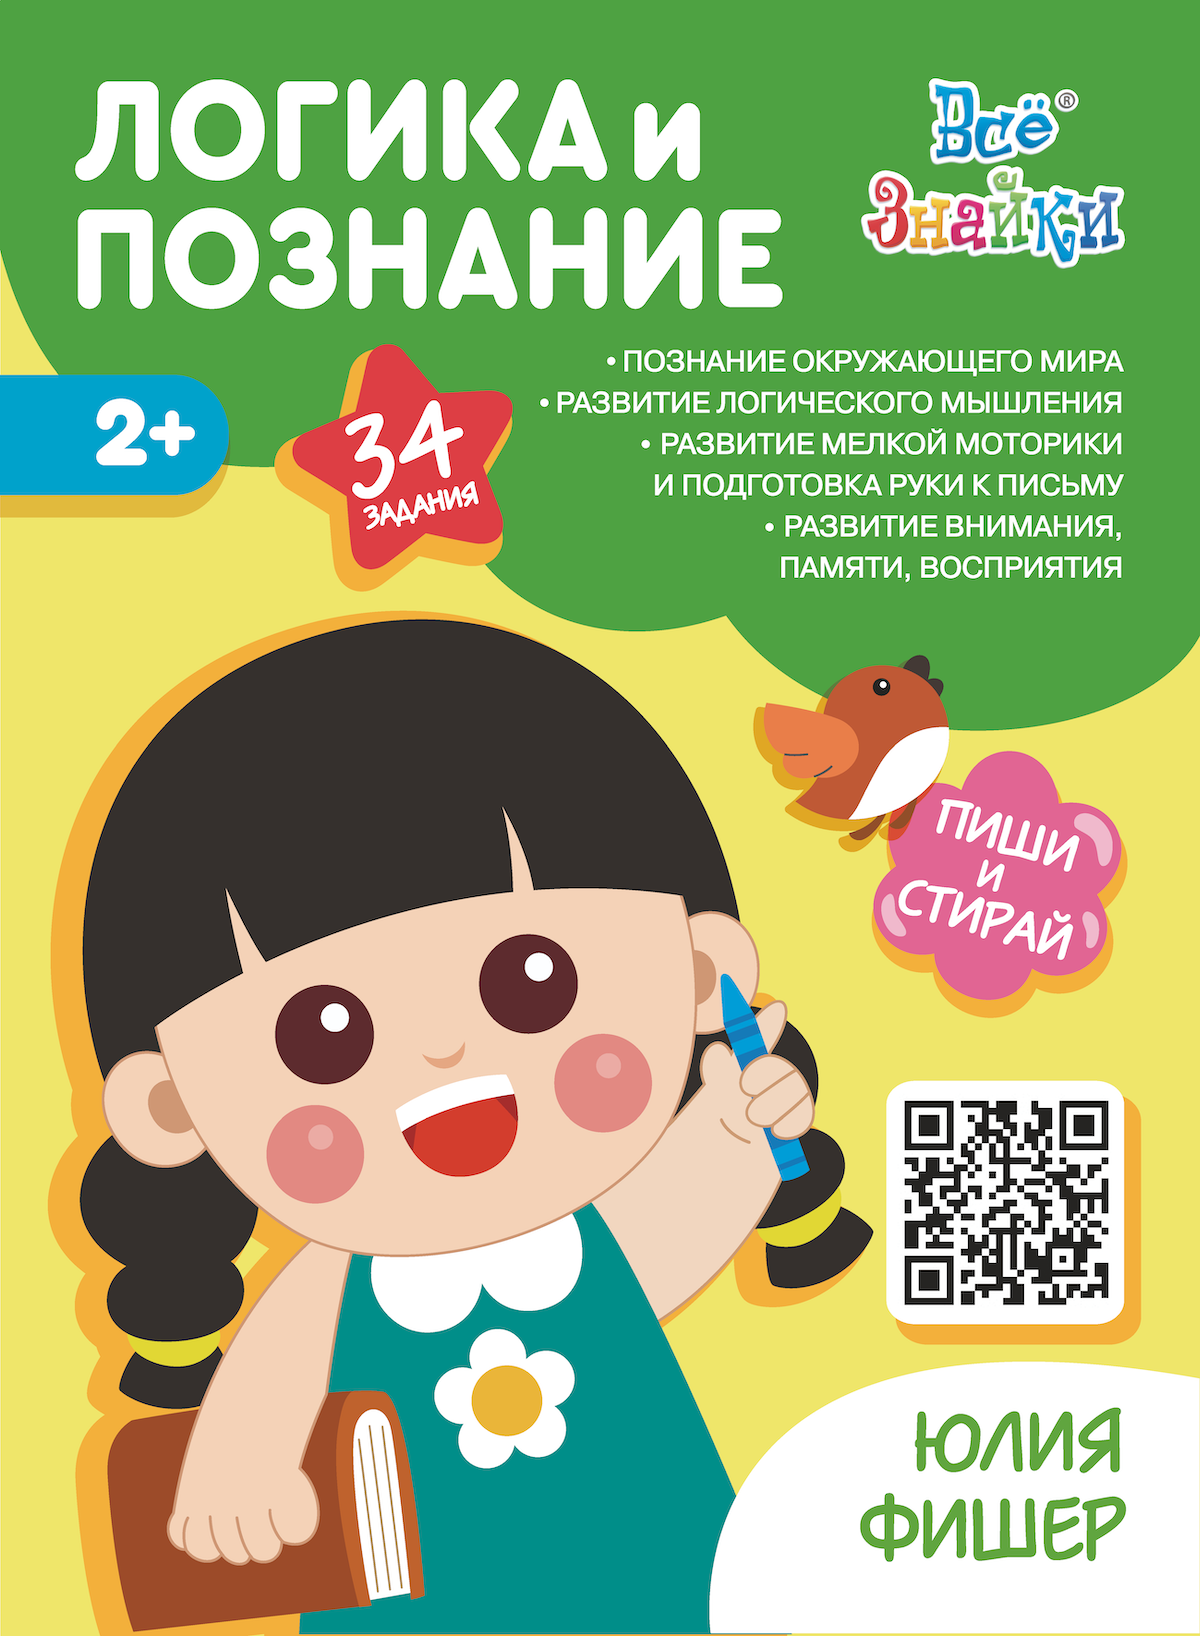 Развиваем малыша: 8 лучших развивающих пособий для детей дошкольного в – Kids Russian Books